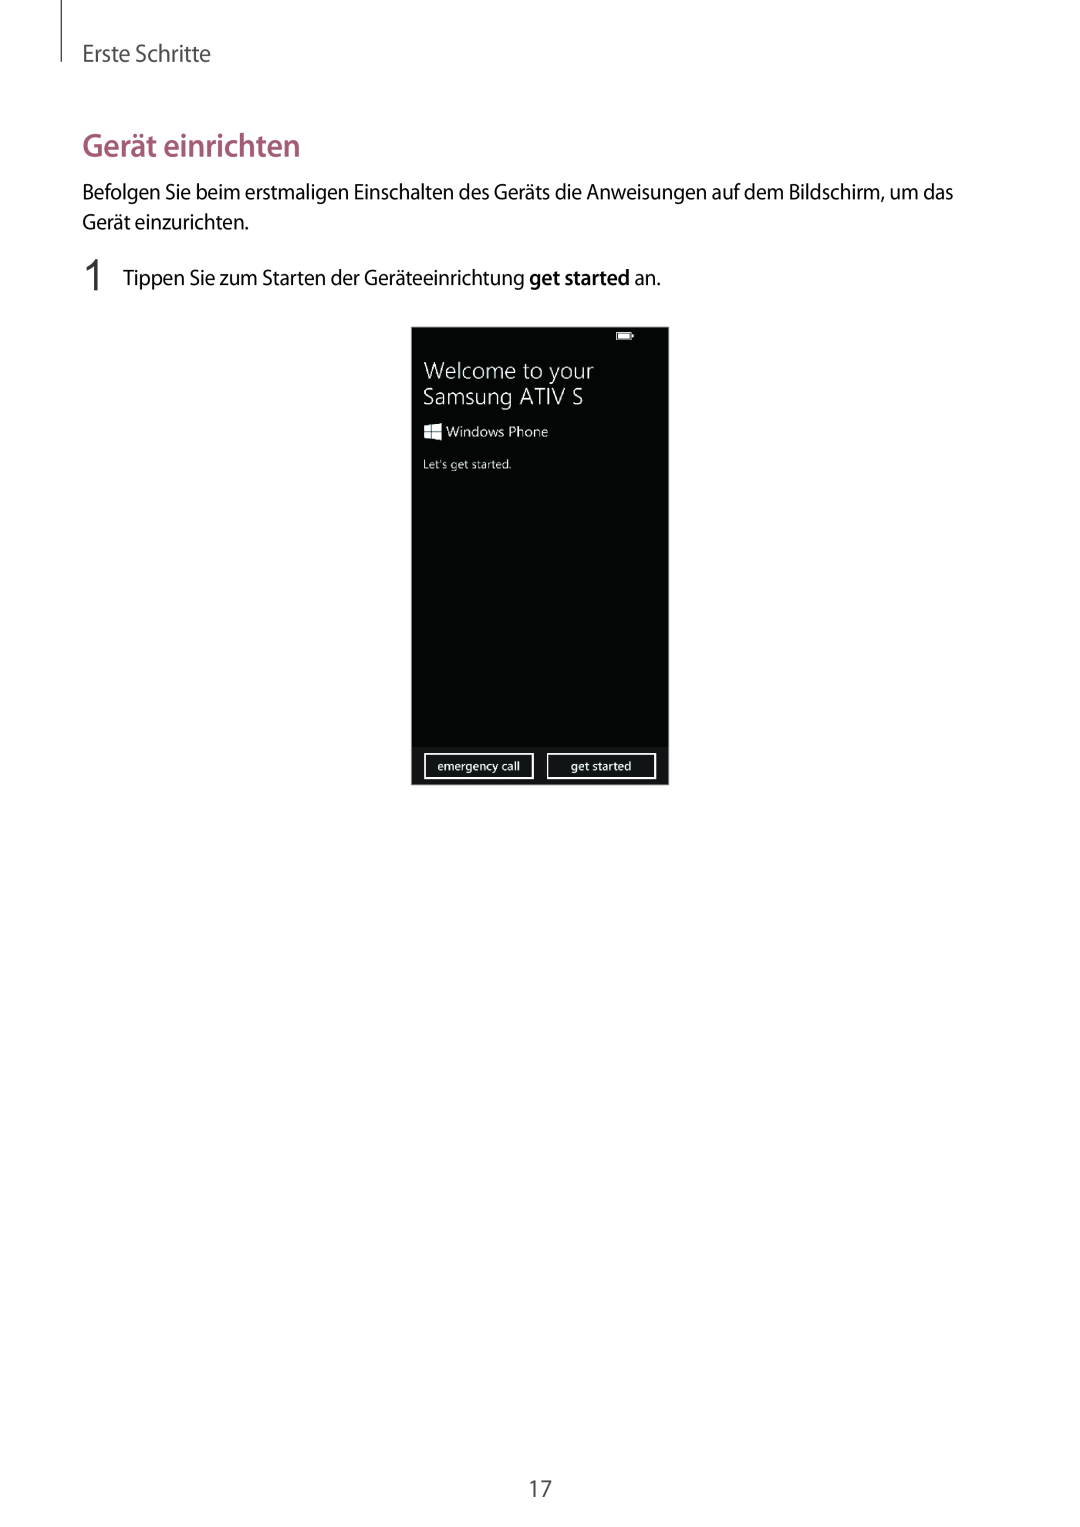 Samsung GT-I8750ALADBT manual Gerät einrichten, Erste Schritte, Tippen Sie zum Starten der Geräteeinrichtung get started an 